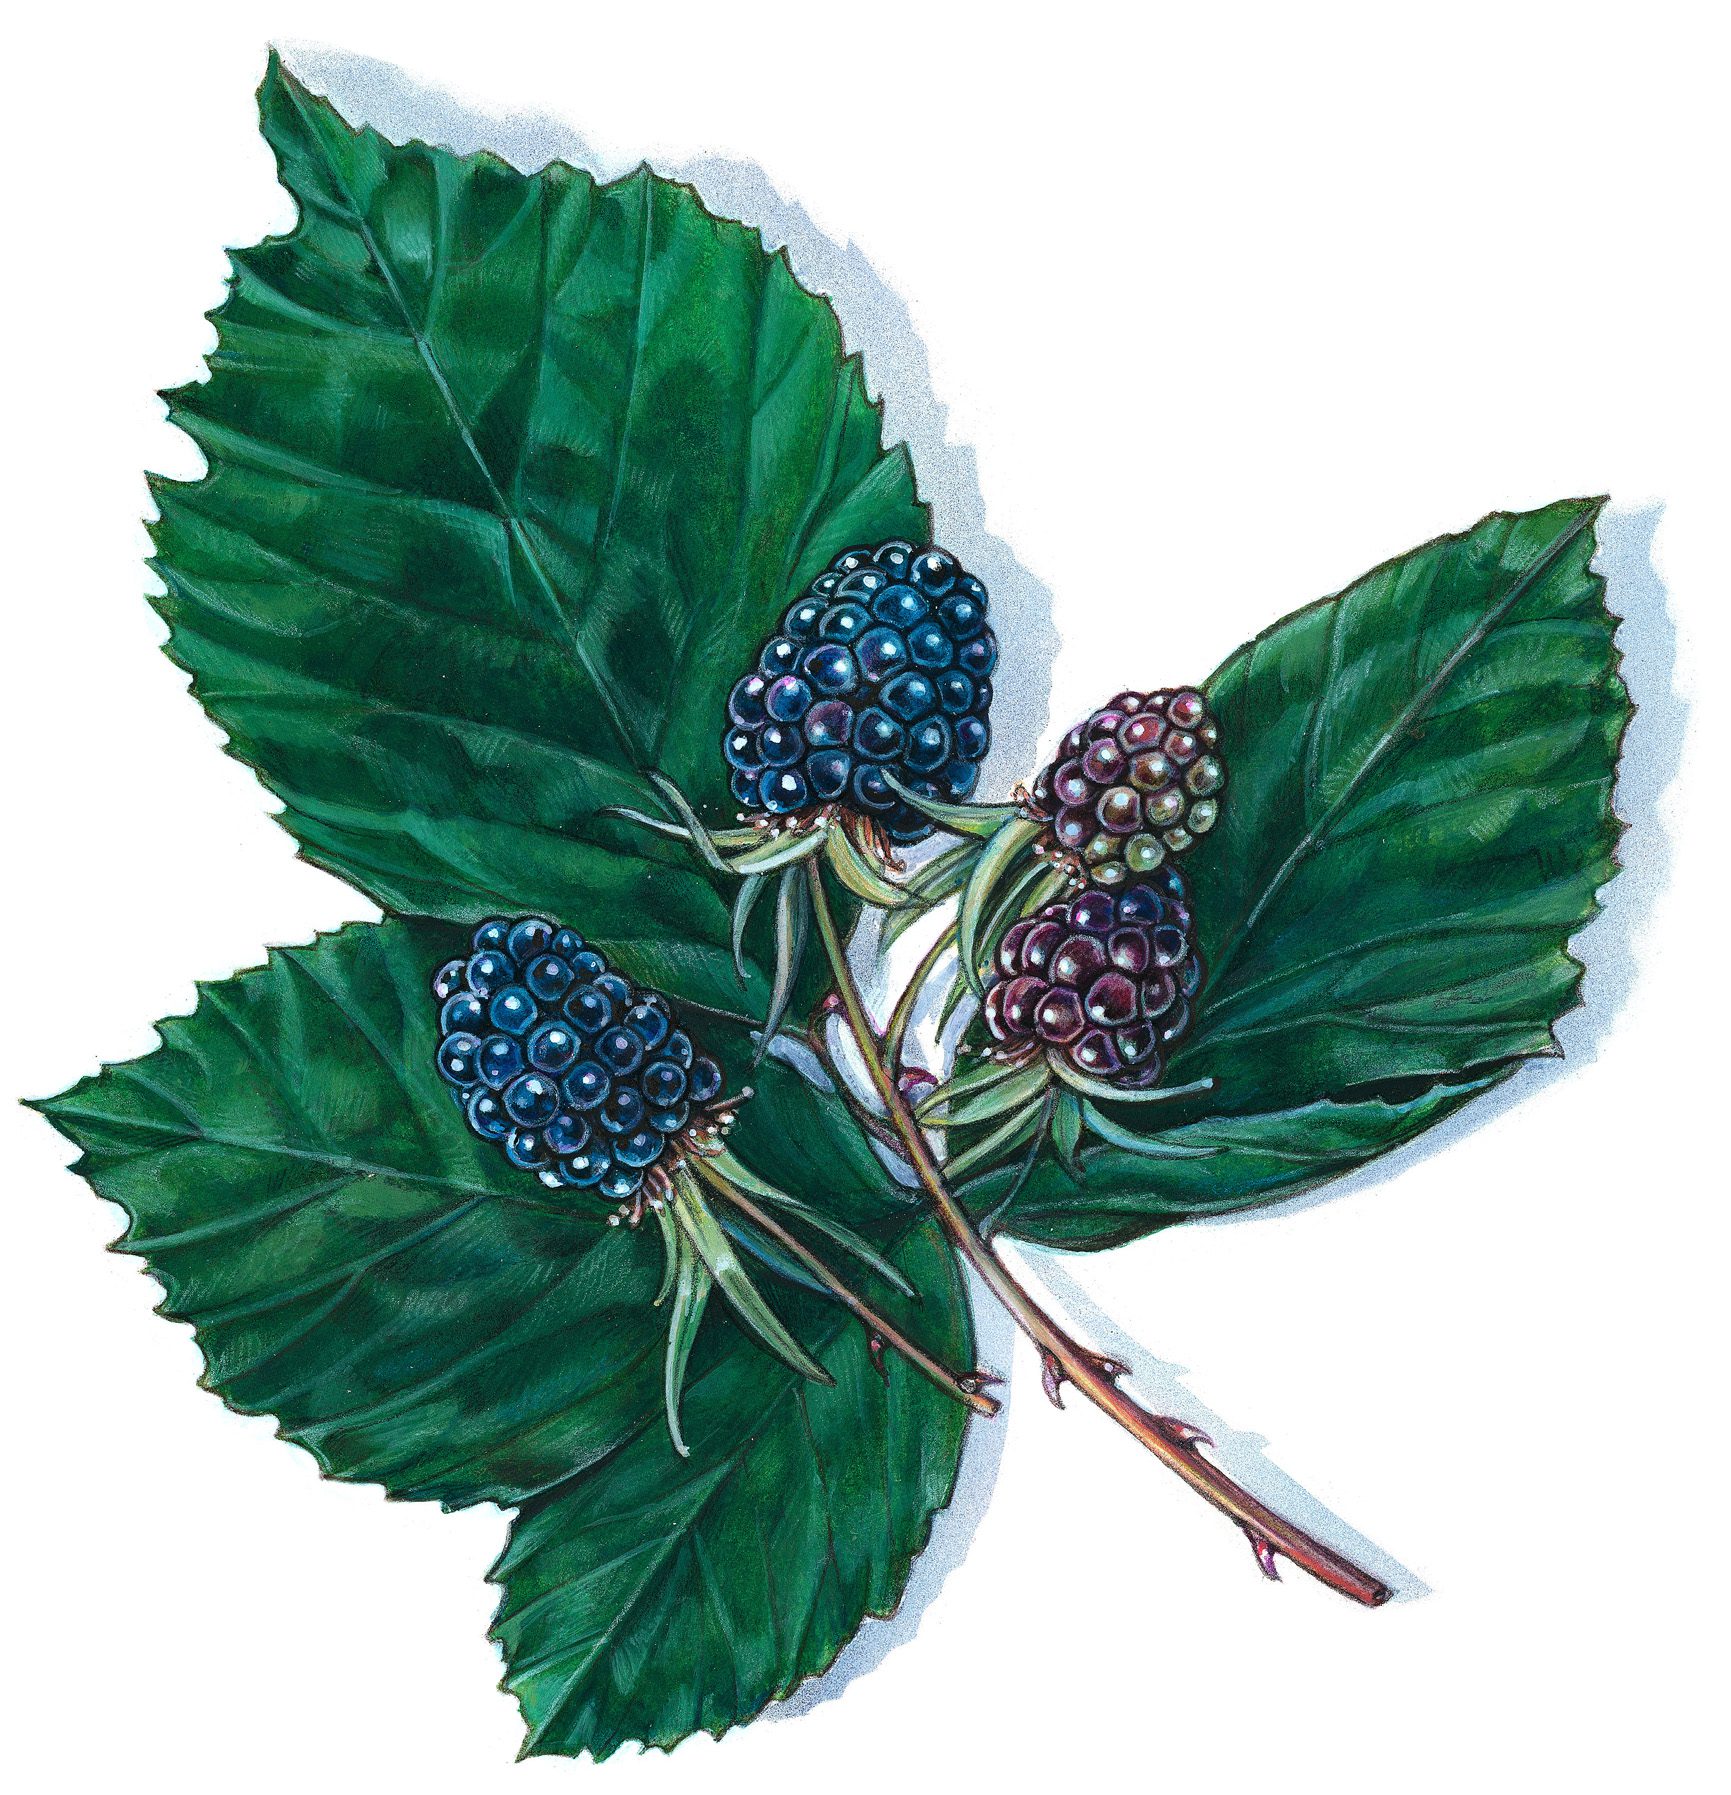 An illustration of blackberries